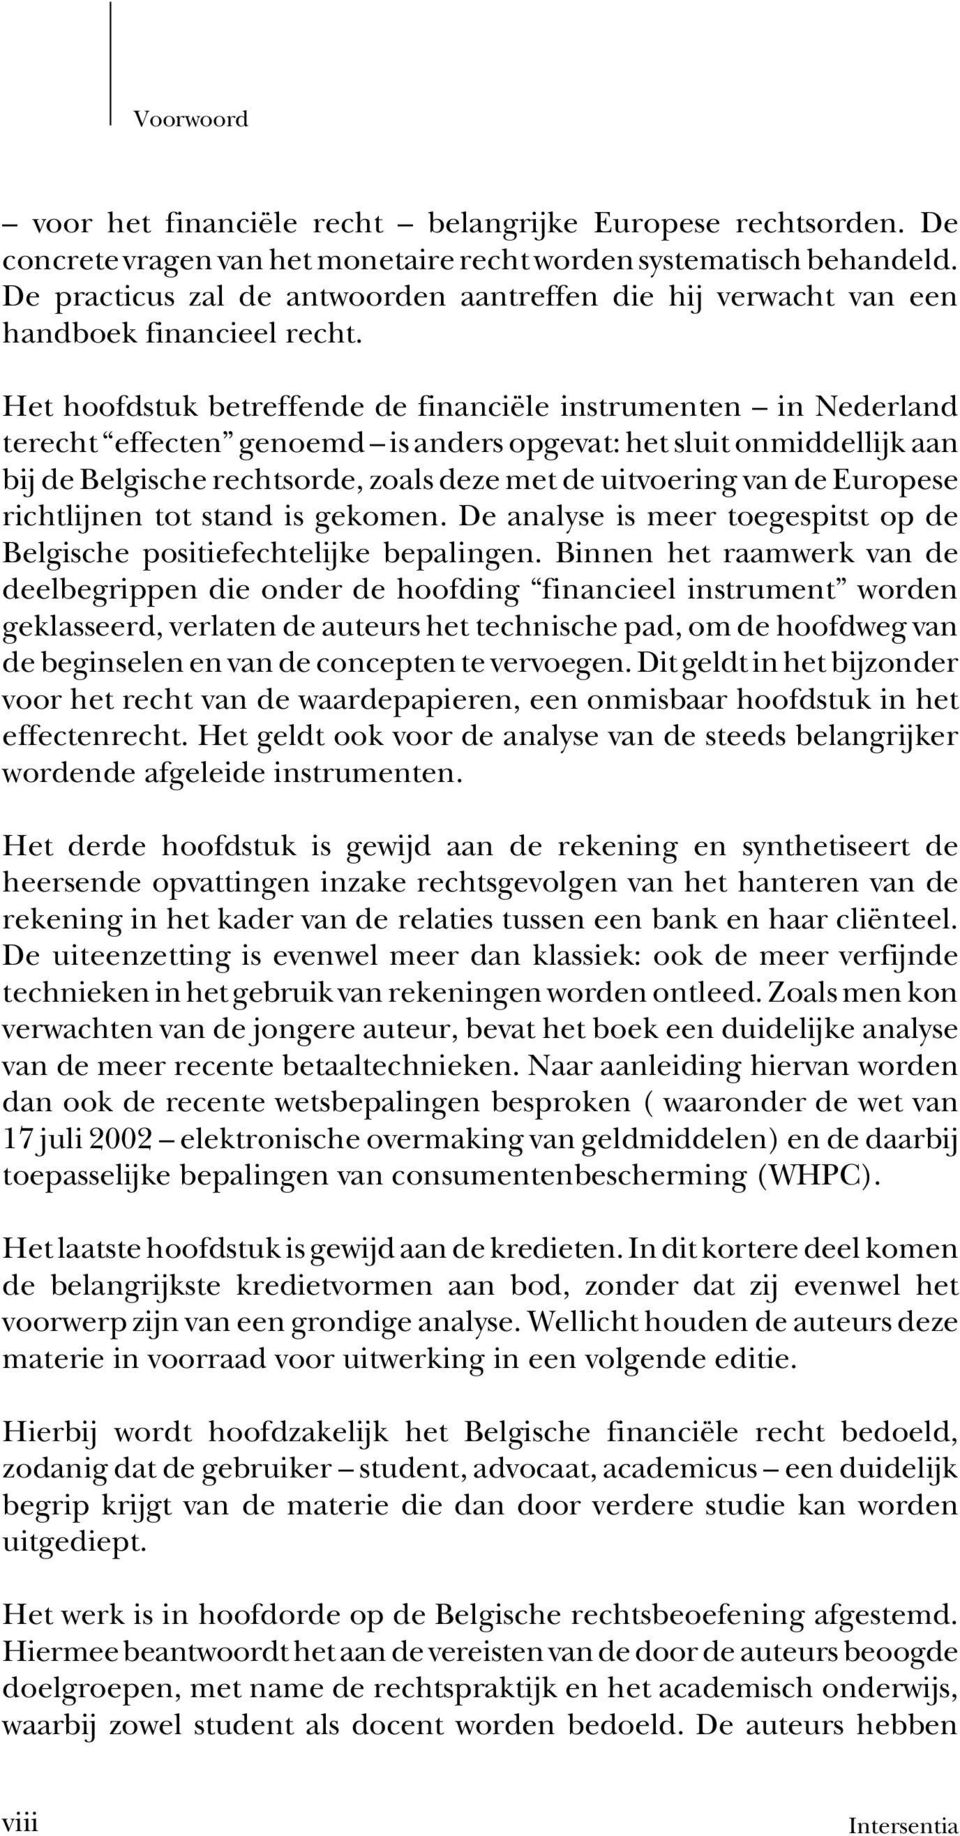 Het hoofdstuk betreffende de financiële instrumenten in Nederland terecht effecten genoemd is anders opgevat: het sluit onmiddellijk aan bij de Belgische rechtsorde, zoals deze met de uitvoering van